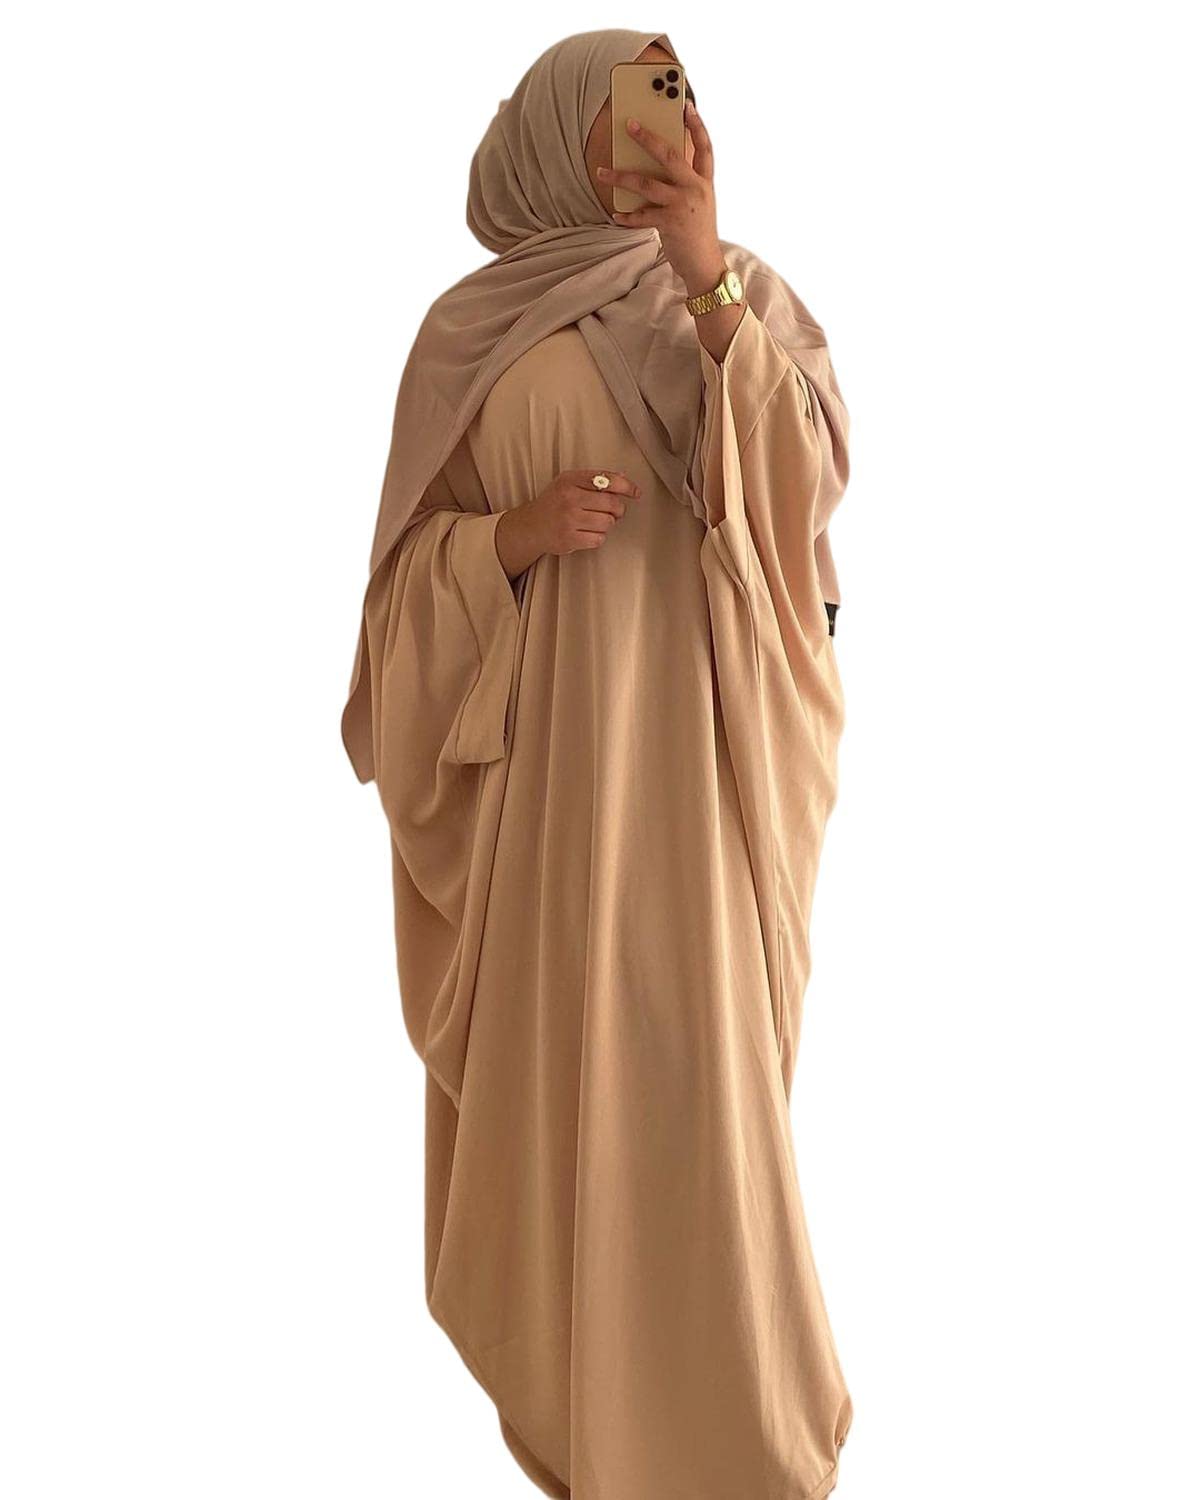 RUIG Damen Kleid Muslimische Gebet Abaya Islamische Robe Maxi Afrikanischer Kaftan Türkei Islam Dubai Türkei Kleid in voller Länge ohne Hijab, Beige Ohne Hijab, Einheitsgröße